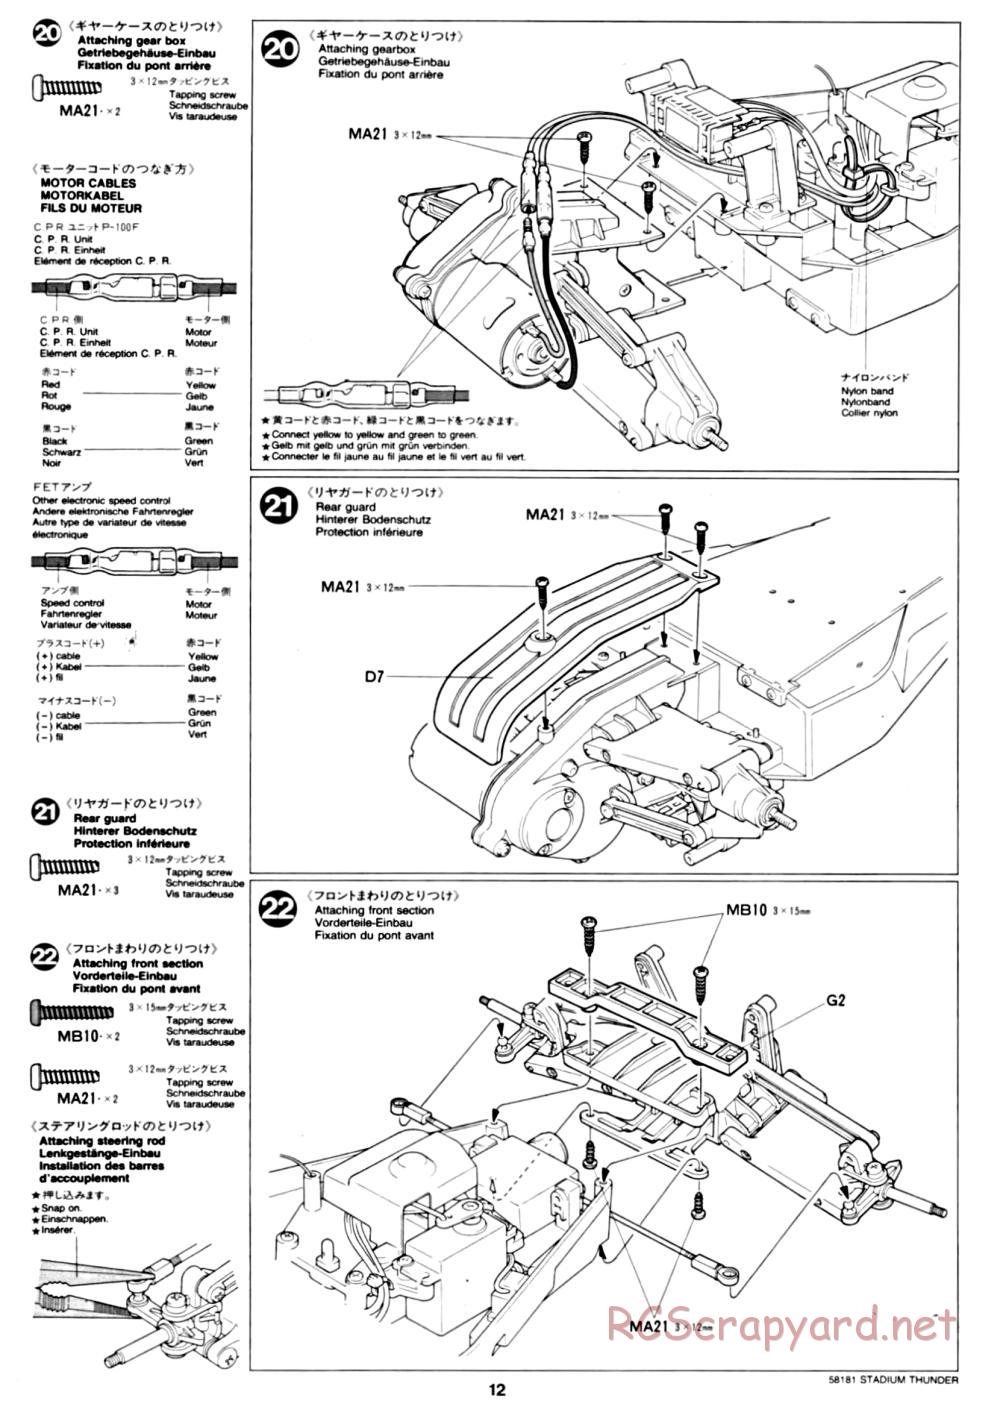 Tamiya - Stadium Thunder Chassis - Manual - Page 12